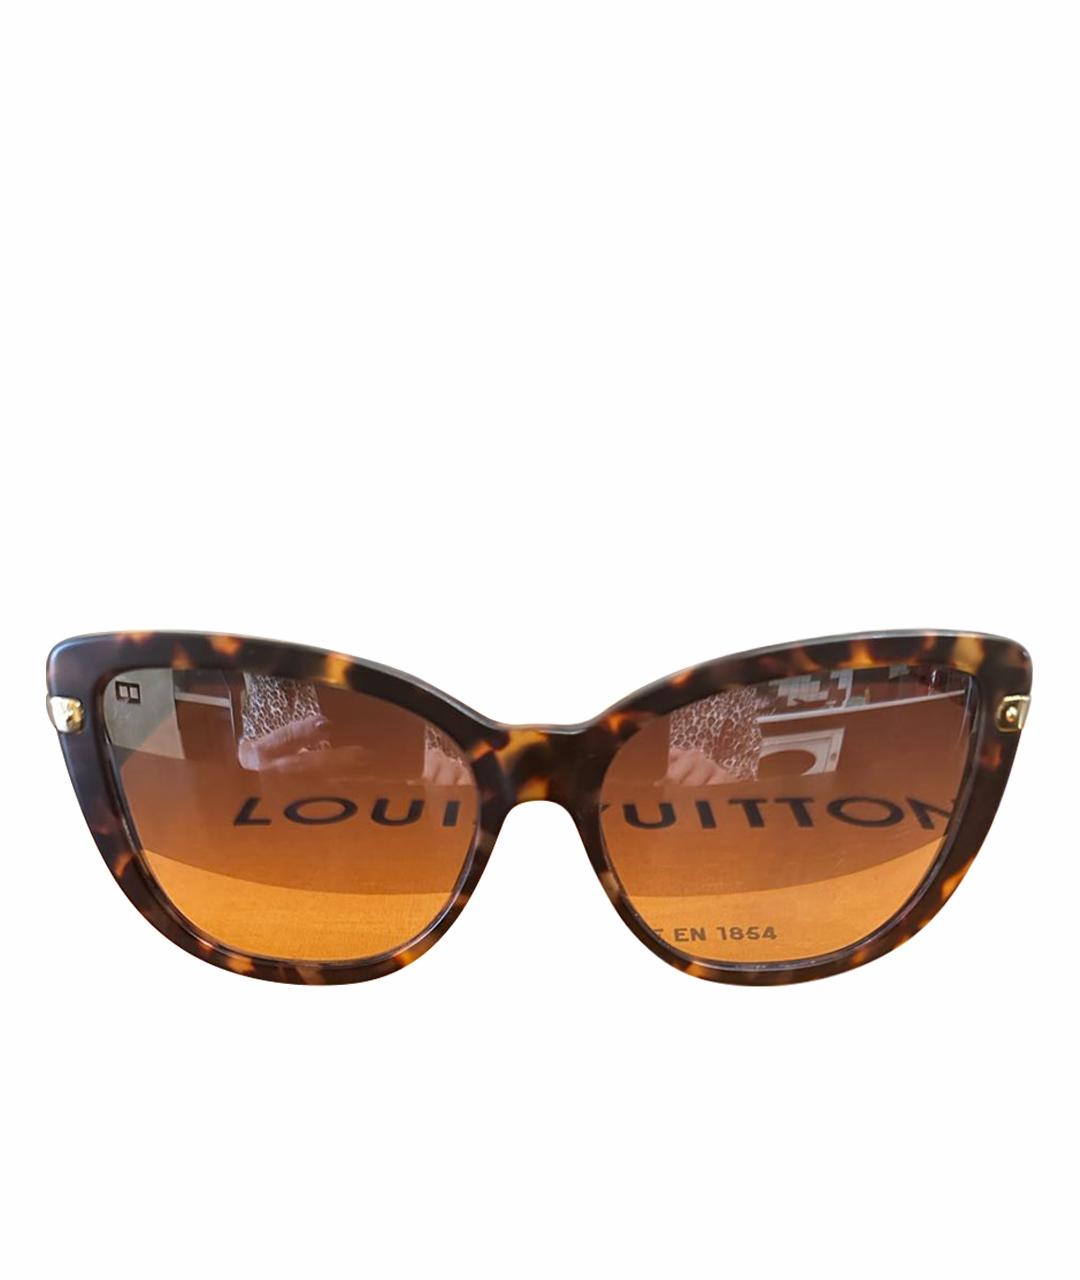 LOUIS VUITTON PRE-OWNED Коричневые солнцезащитные очки, фото 1